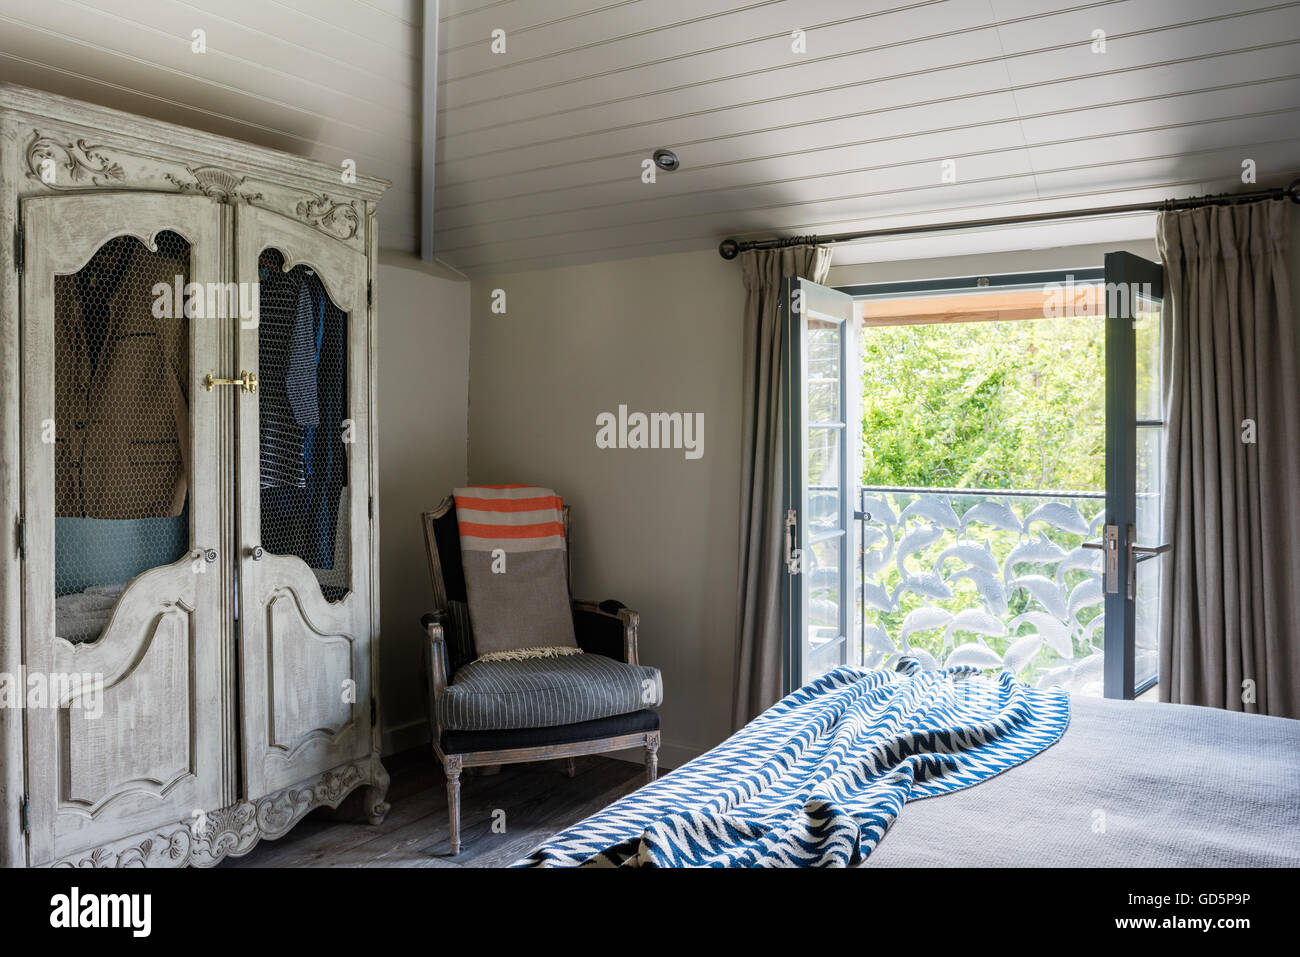 Une armoire dans la chambre avec balcon romantique faite par le forgeron Nick Plante. la couverture sur le lit est de Pomax Banque D'Images